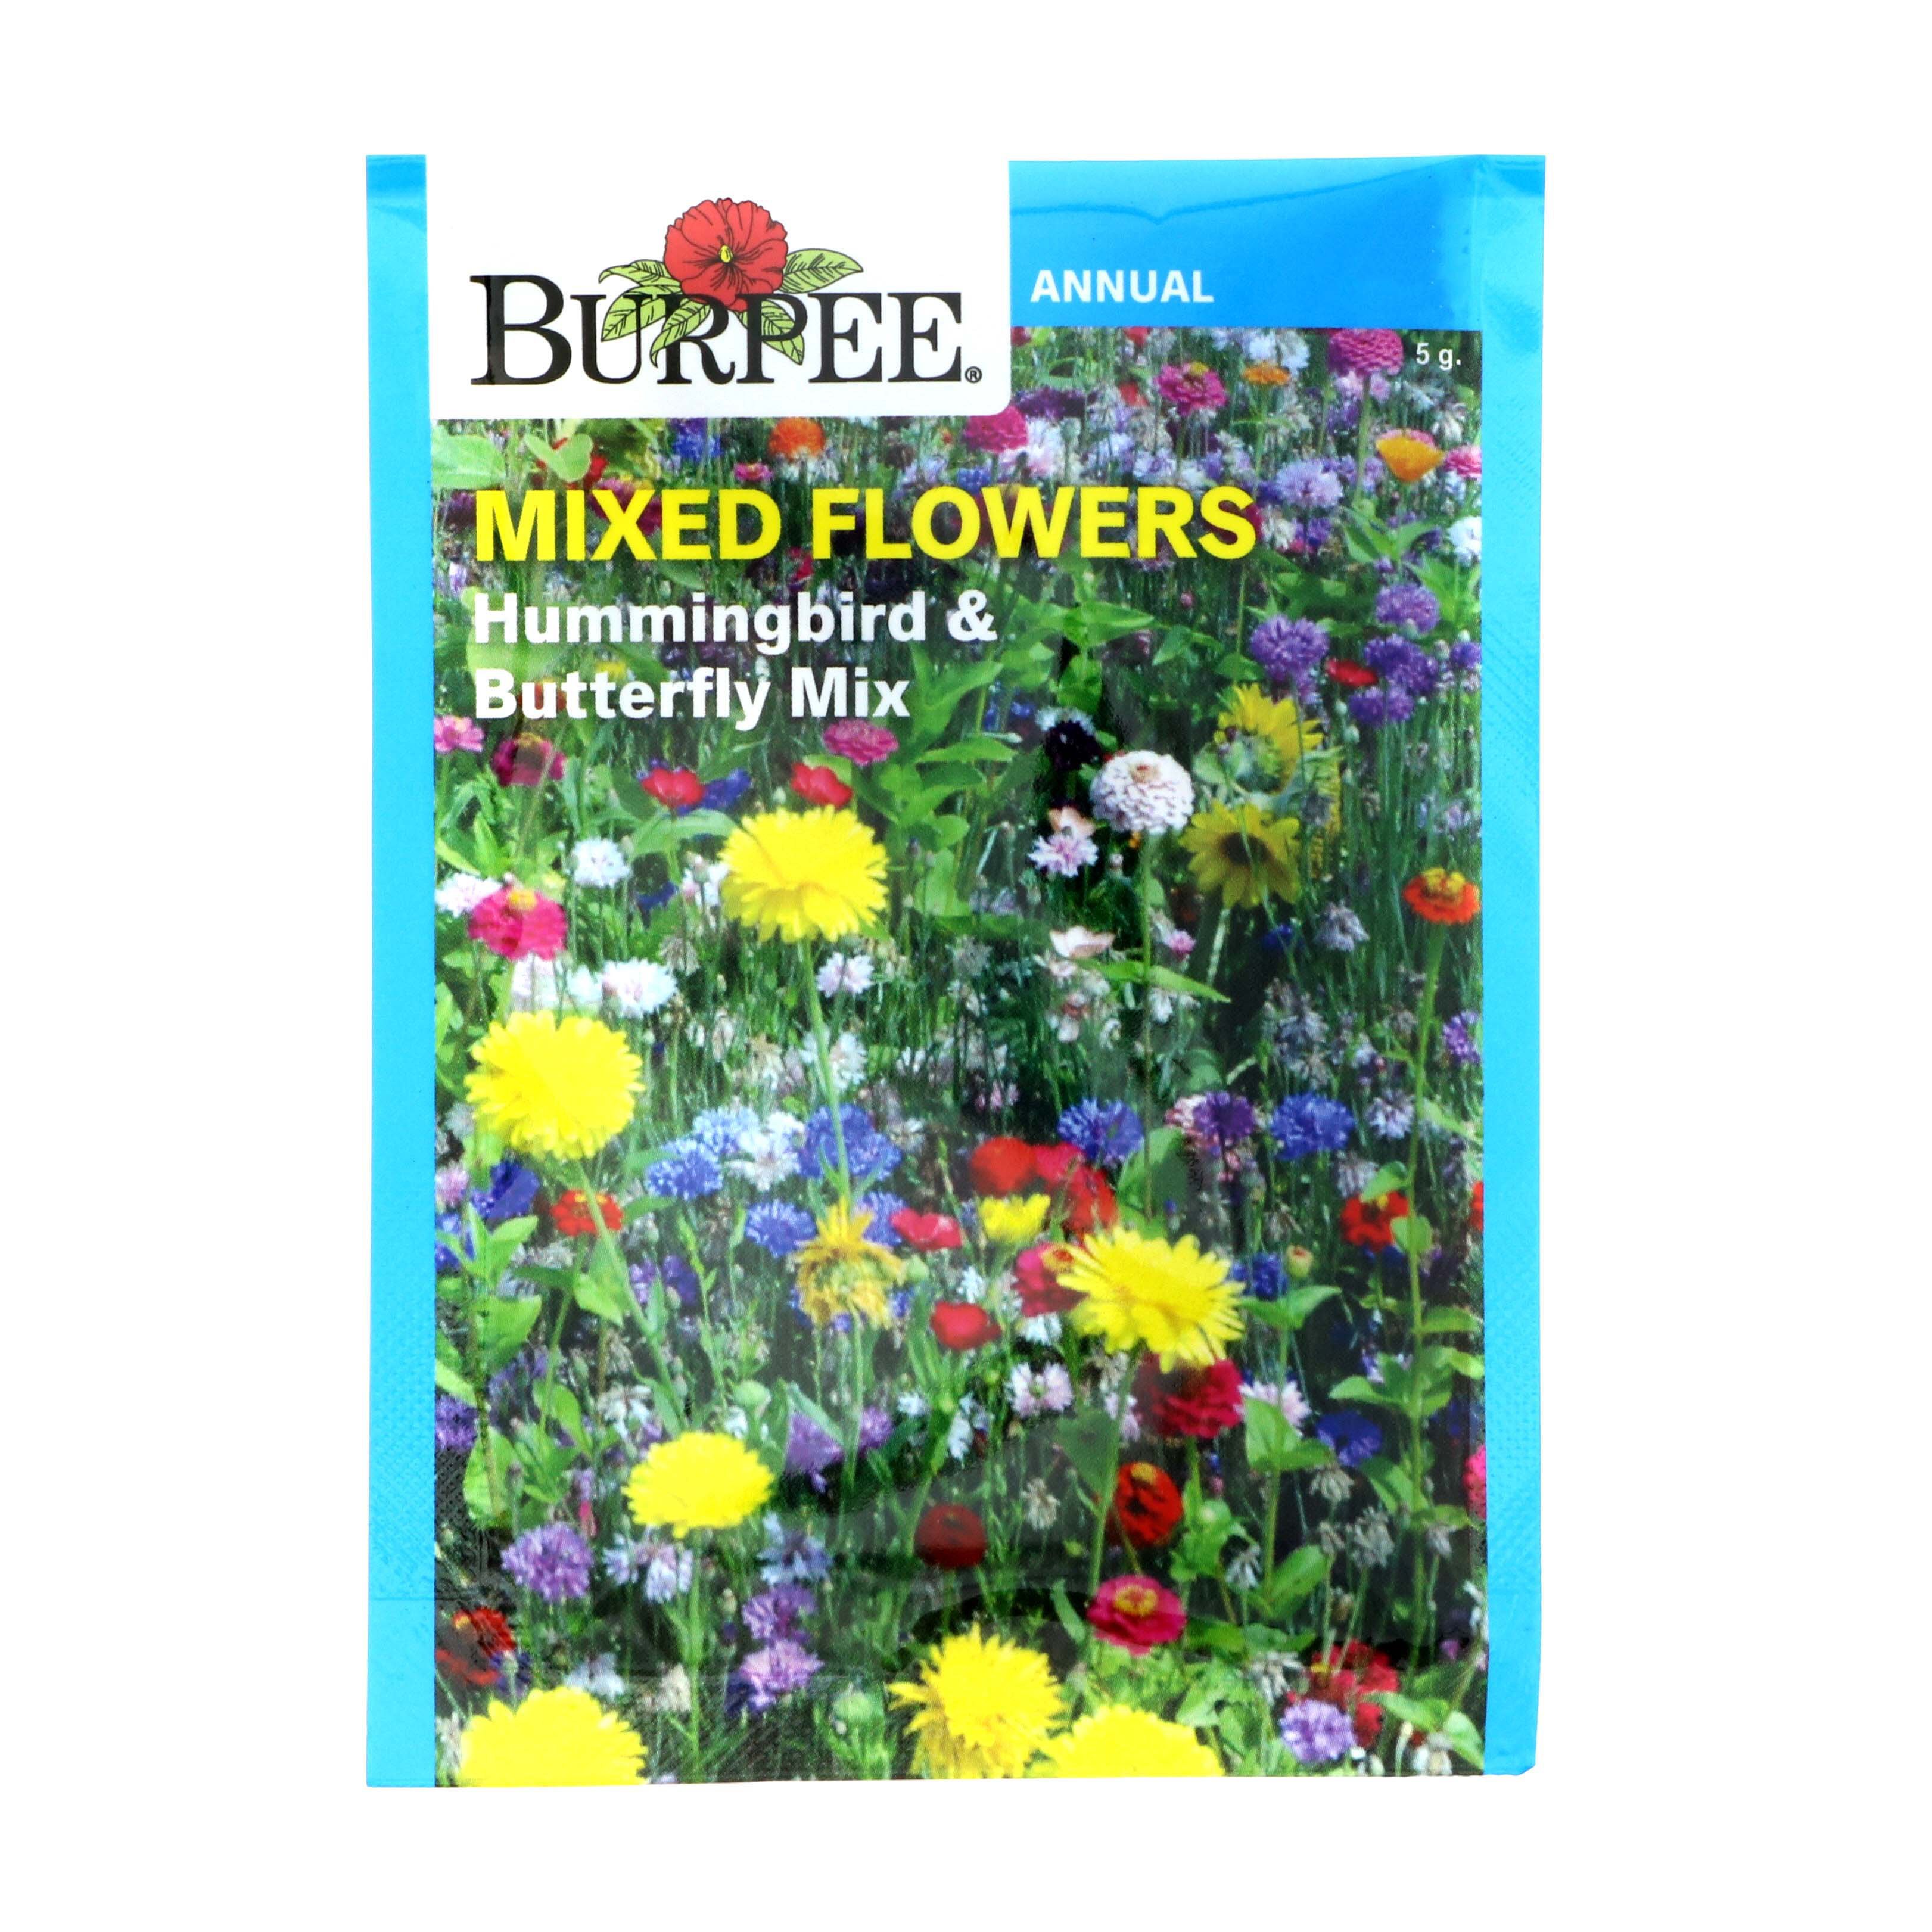 Burpee Mixed Flowers, Hummingbird & Butterfly Mix Seeds - Shop Seeds at ...